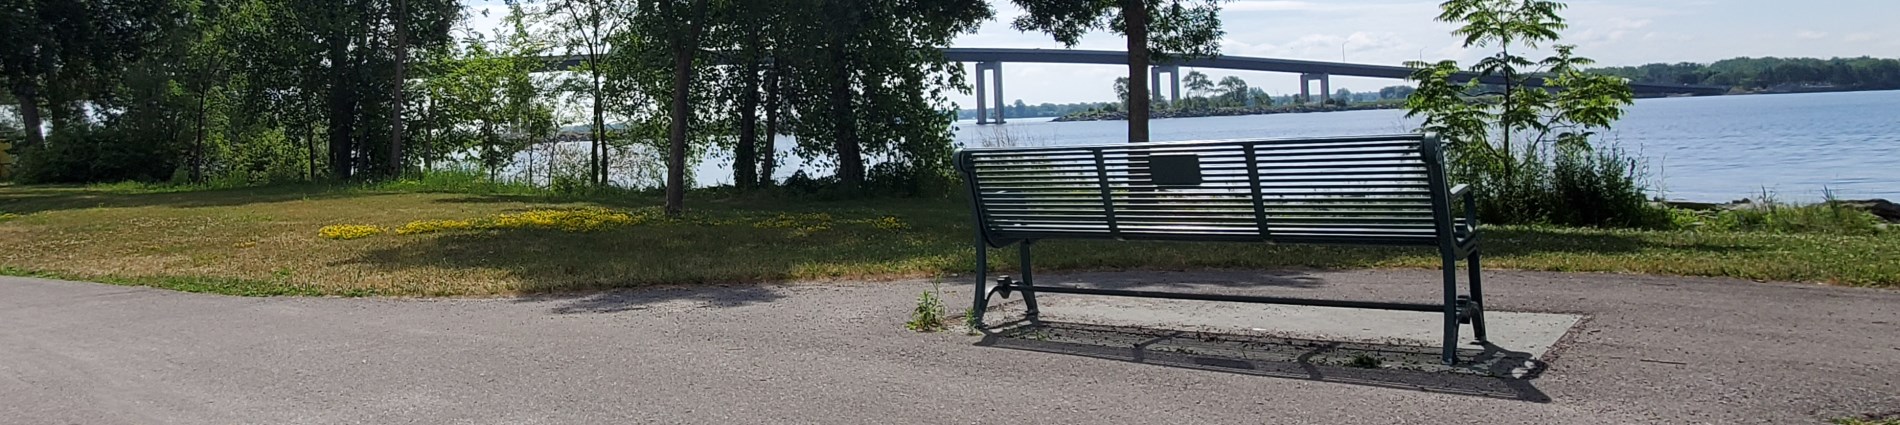 Photo of memorial bench overlooking Bay of Quinte